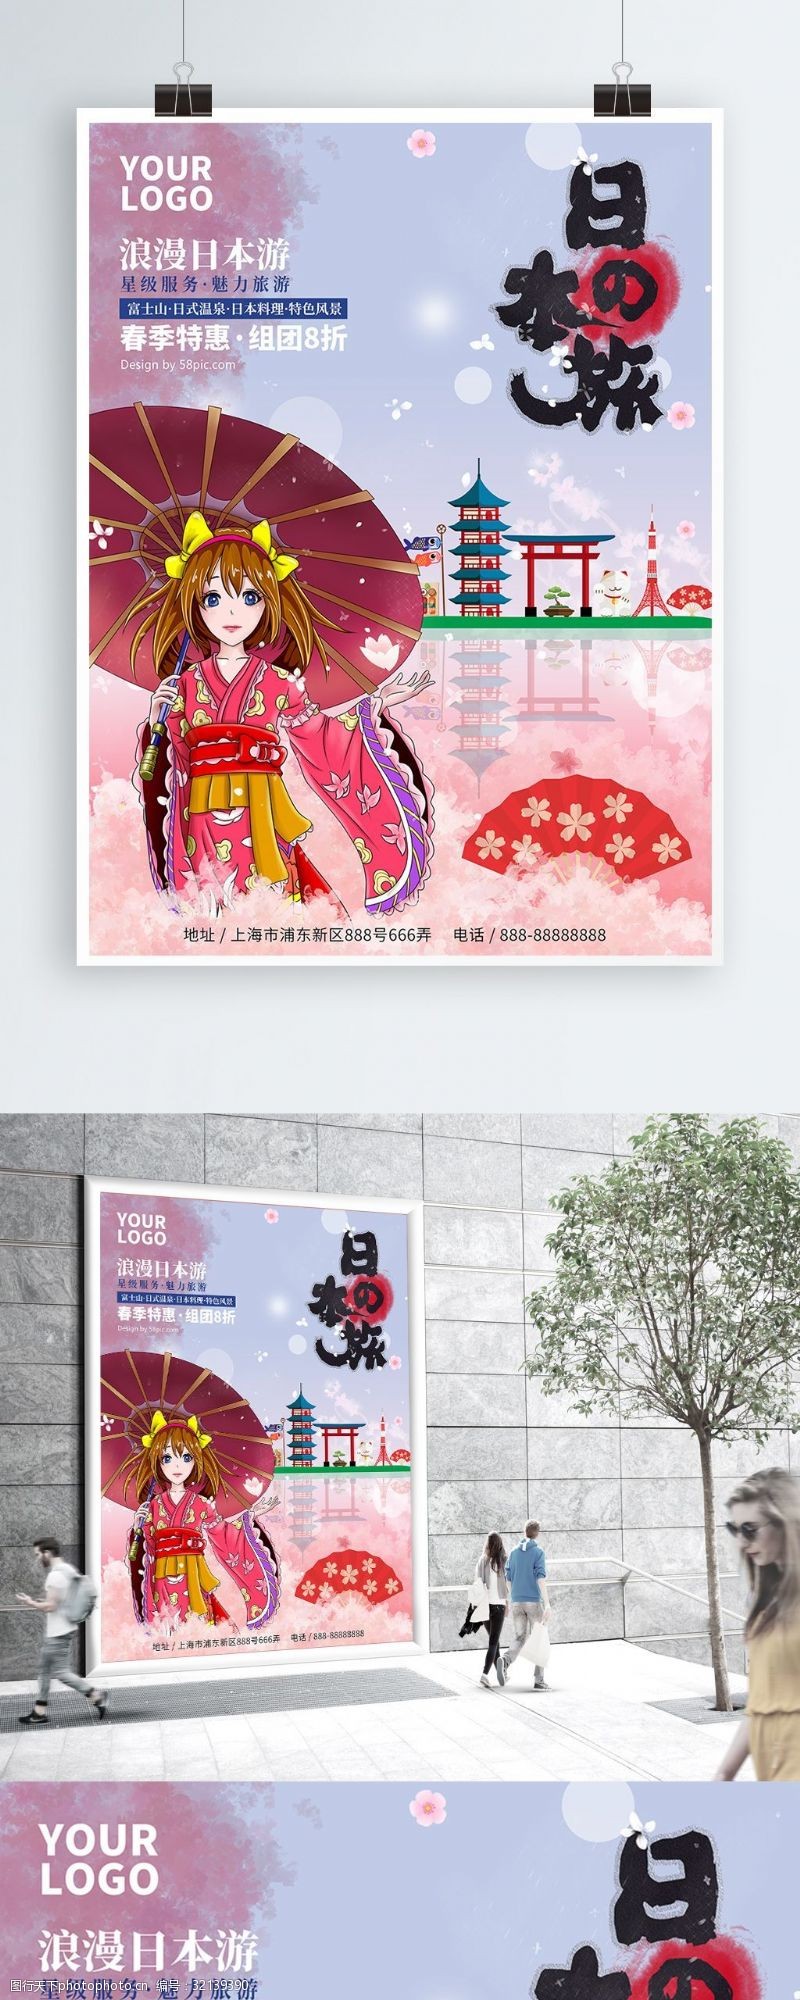 樱花广告原创手绘日本旅游海报